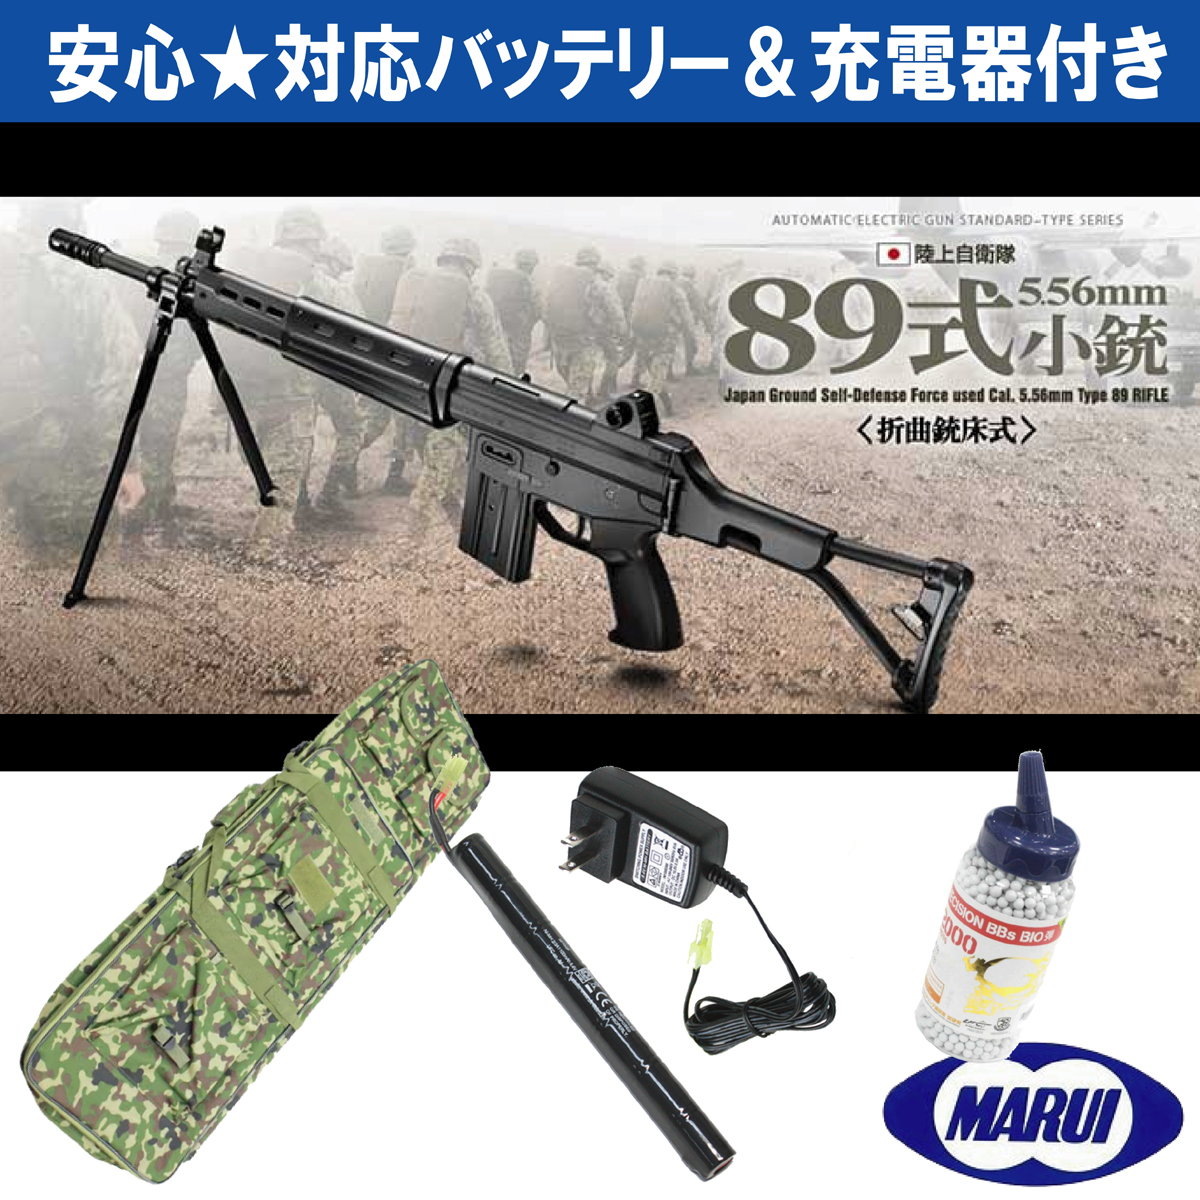 東京マルイ 89式小銃 - 通販 - gofukuyasan.com